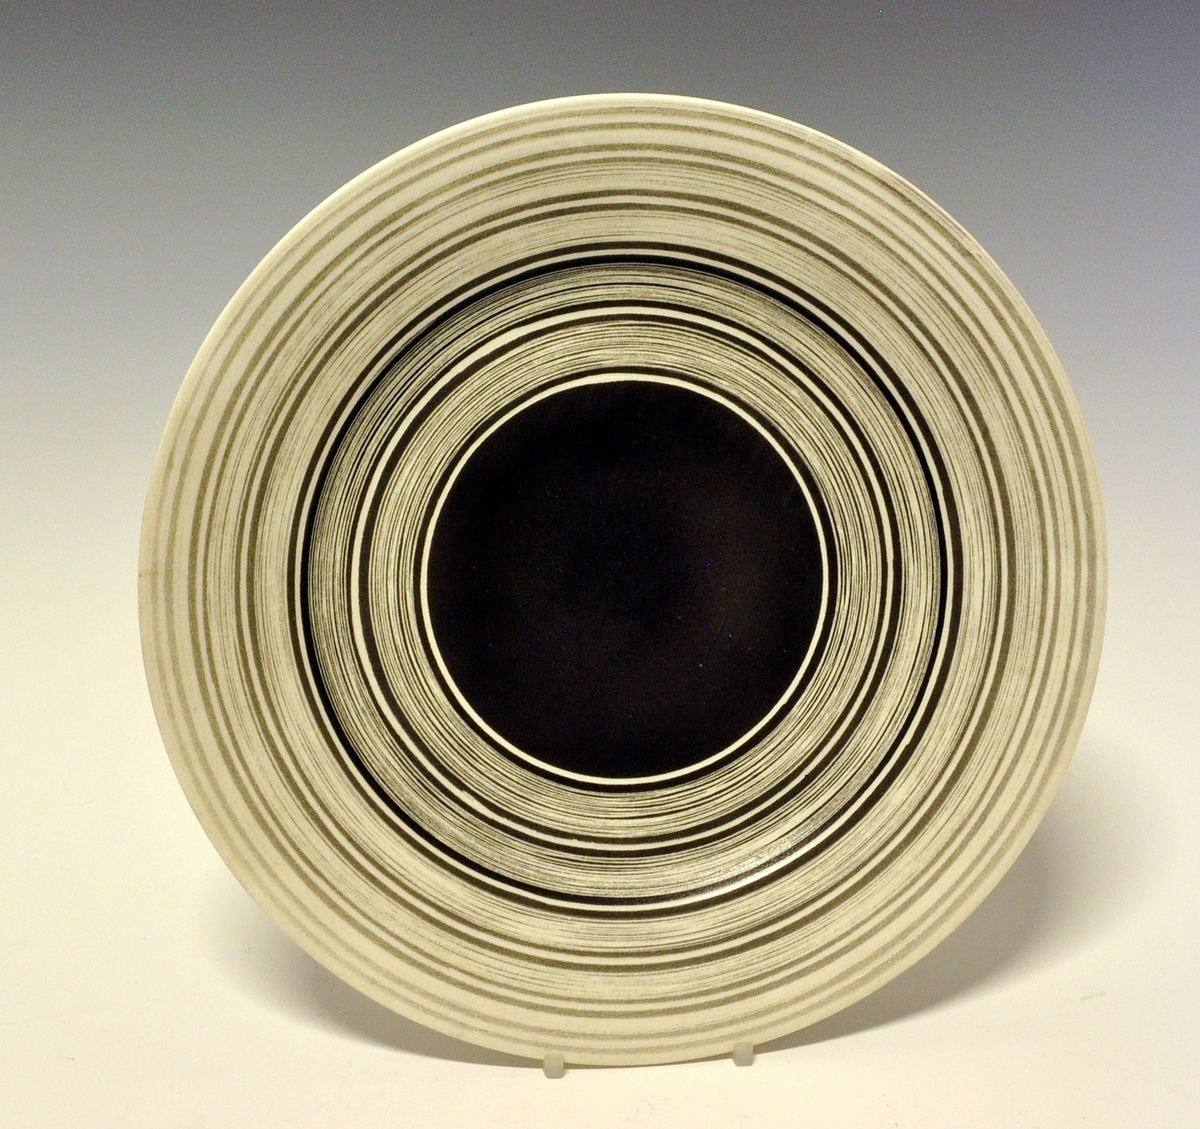 Flat tallerken av porselen. Hvit glasur. Midterste del av speilen er sortmalt, ut fra denne sorte og hvite striper i ulike bredder.